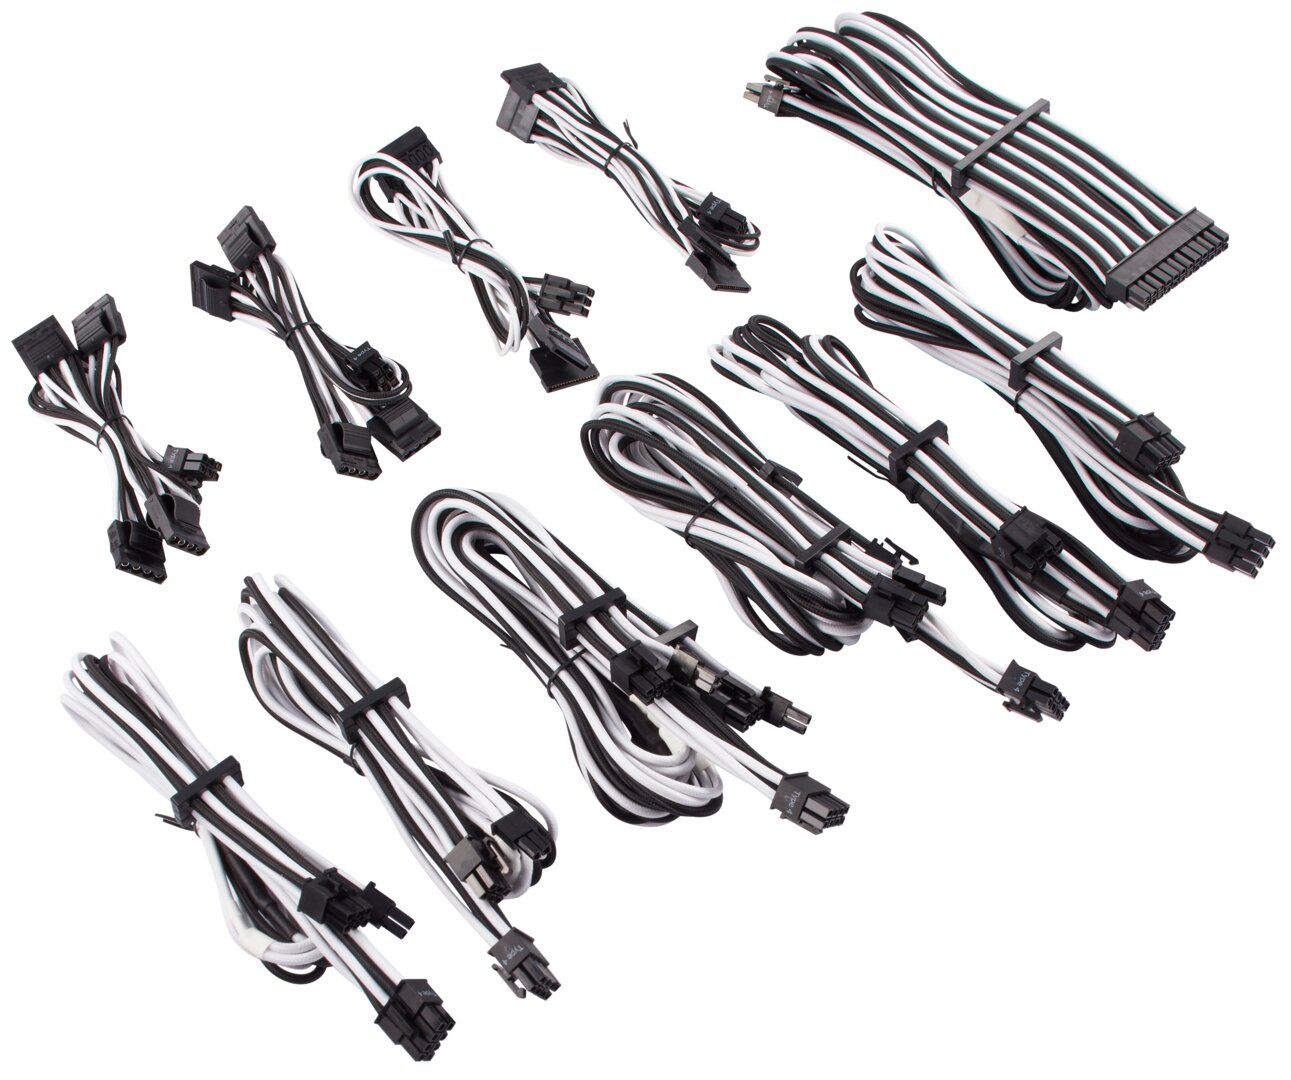 PSU Cables Pro-Kit